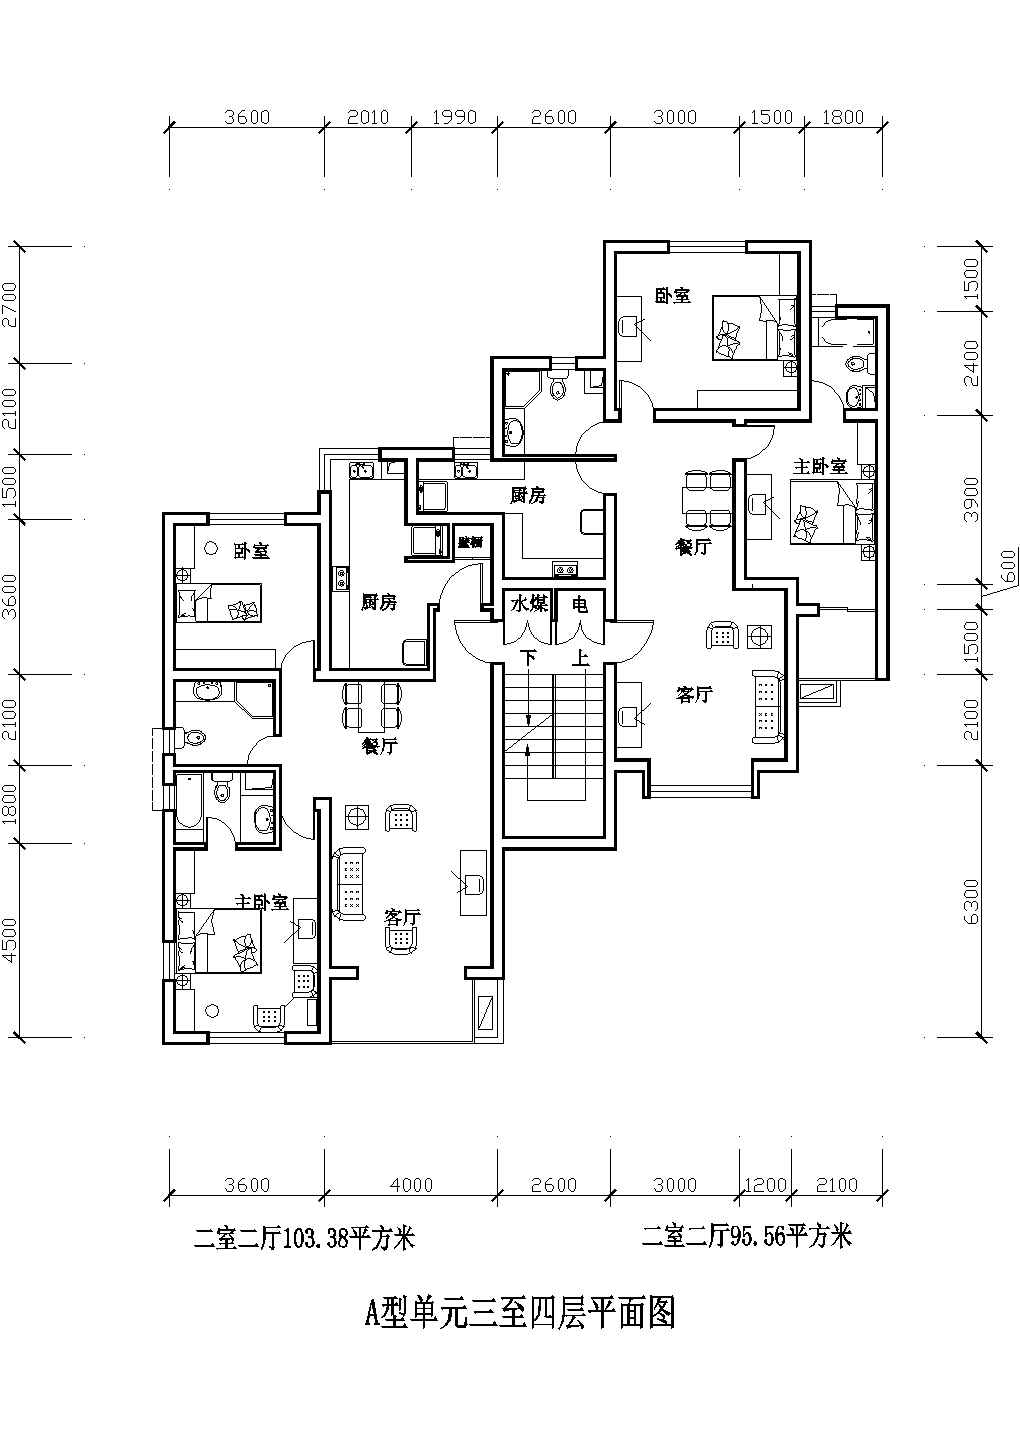 二室二厅103平米Cad户型图设计（绘图细致）